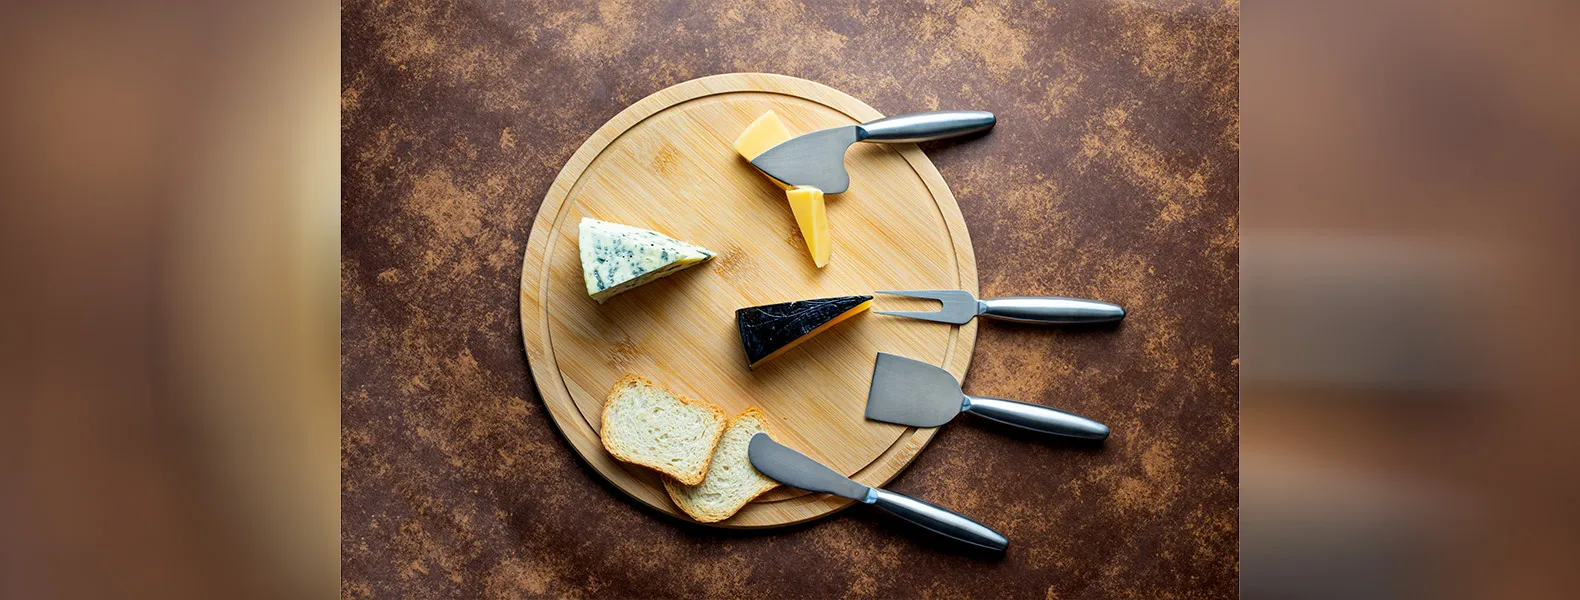 Conjunto para queijo em Bambu/Inox. Acompanha tábua em bambu; garfo, faca sem ponta, faca com ponta e faca quadrada em aço Inox 2CR13.